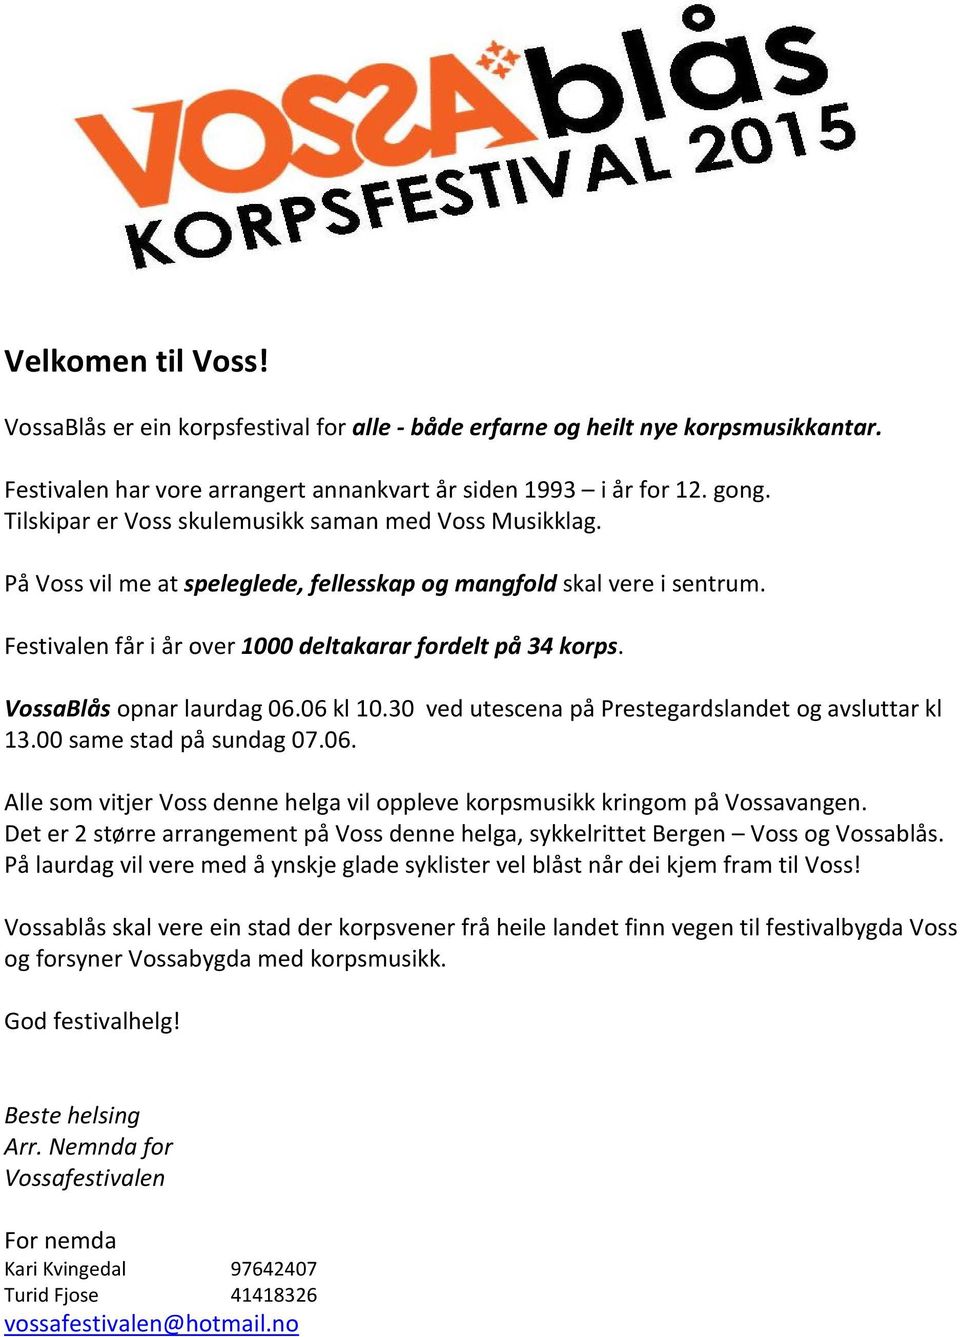 VossaBlås opnar laurdag 06.06 kl 10.30 ved utescena på Prestegardslandet og avsluttar kl 13.00 same stad på sundag 07.06. Alle som vitjer Voss denne helga vil oppleve korpsmusikk kringom på Vossavangen.